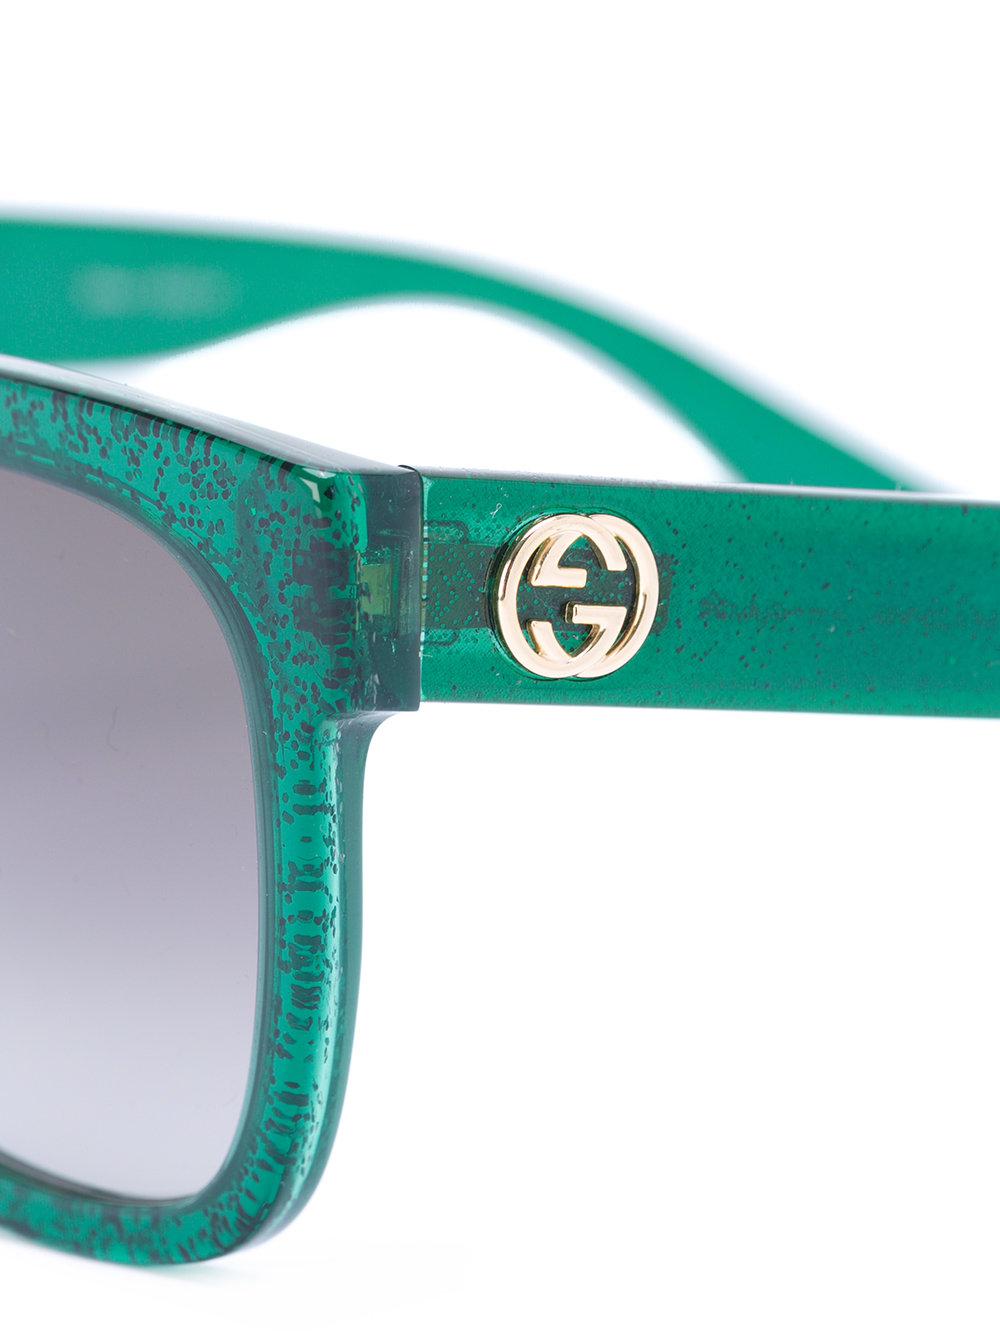 gucci sunglasses green glitter